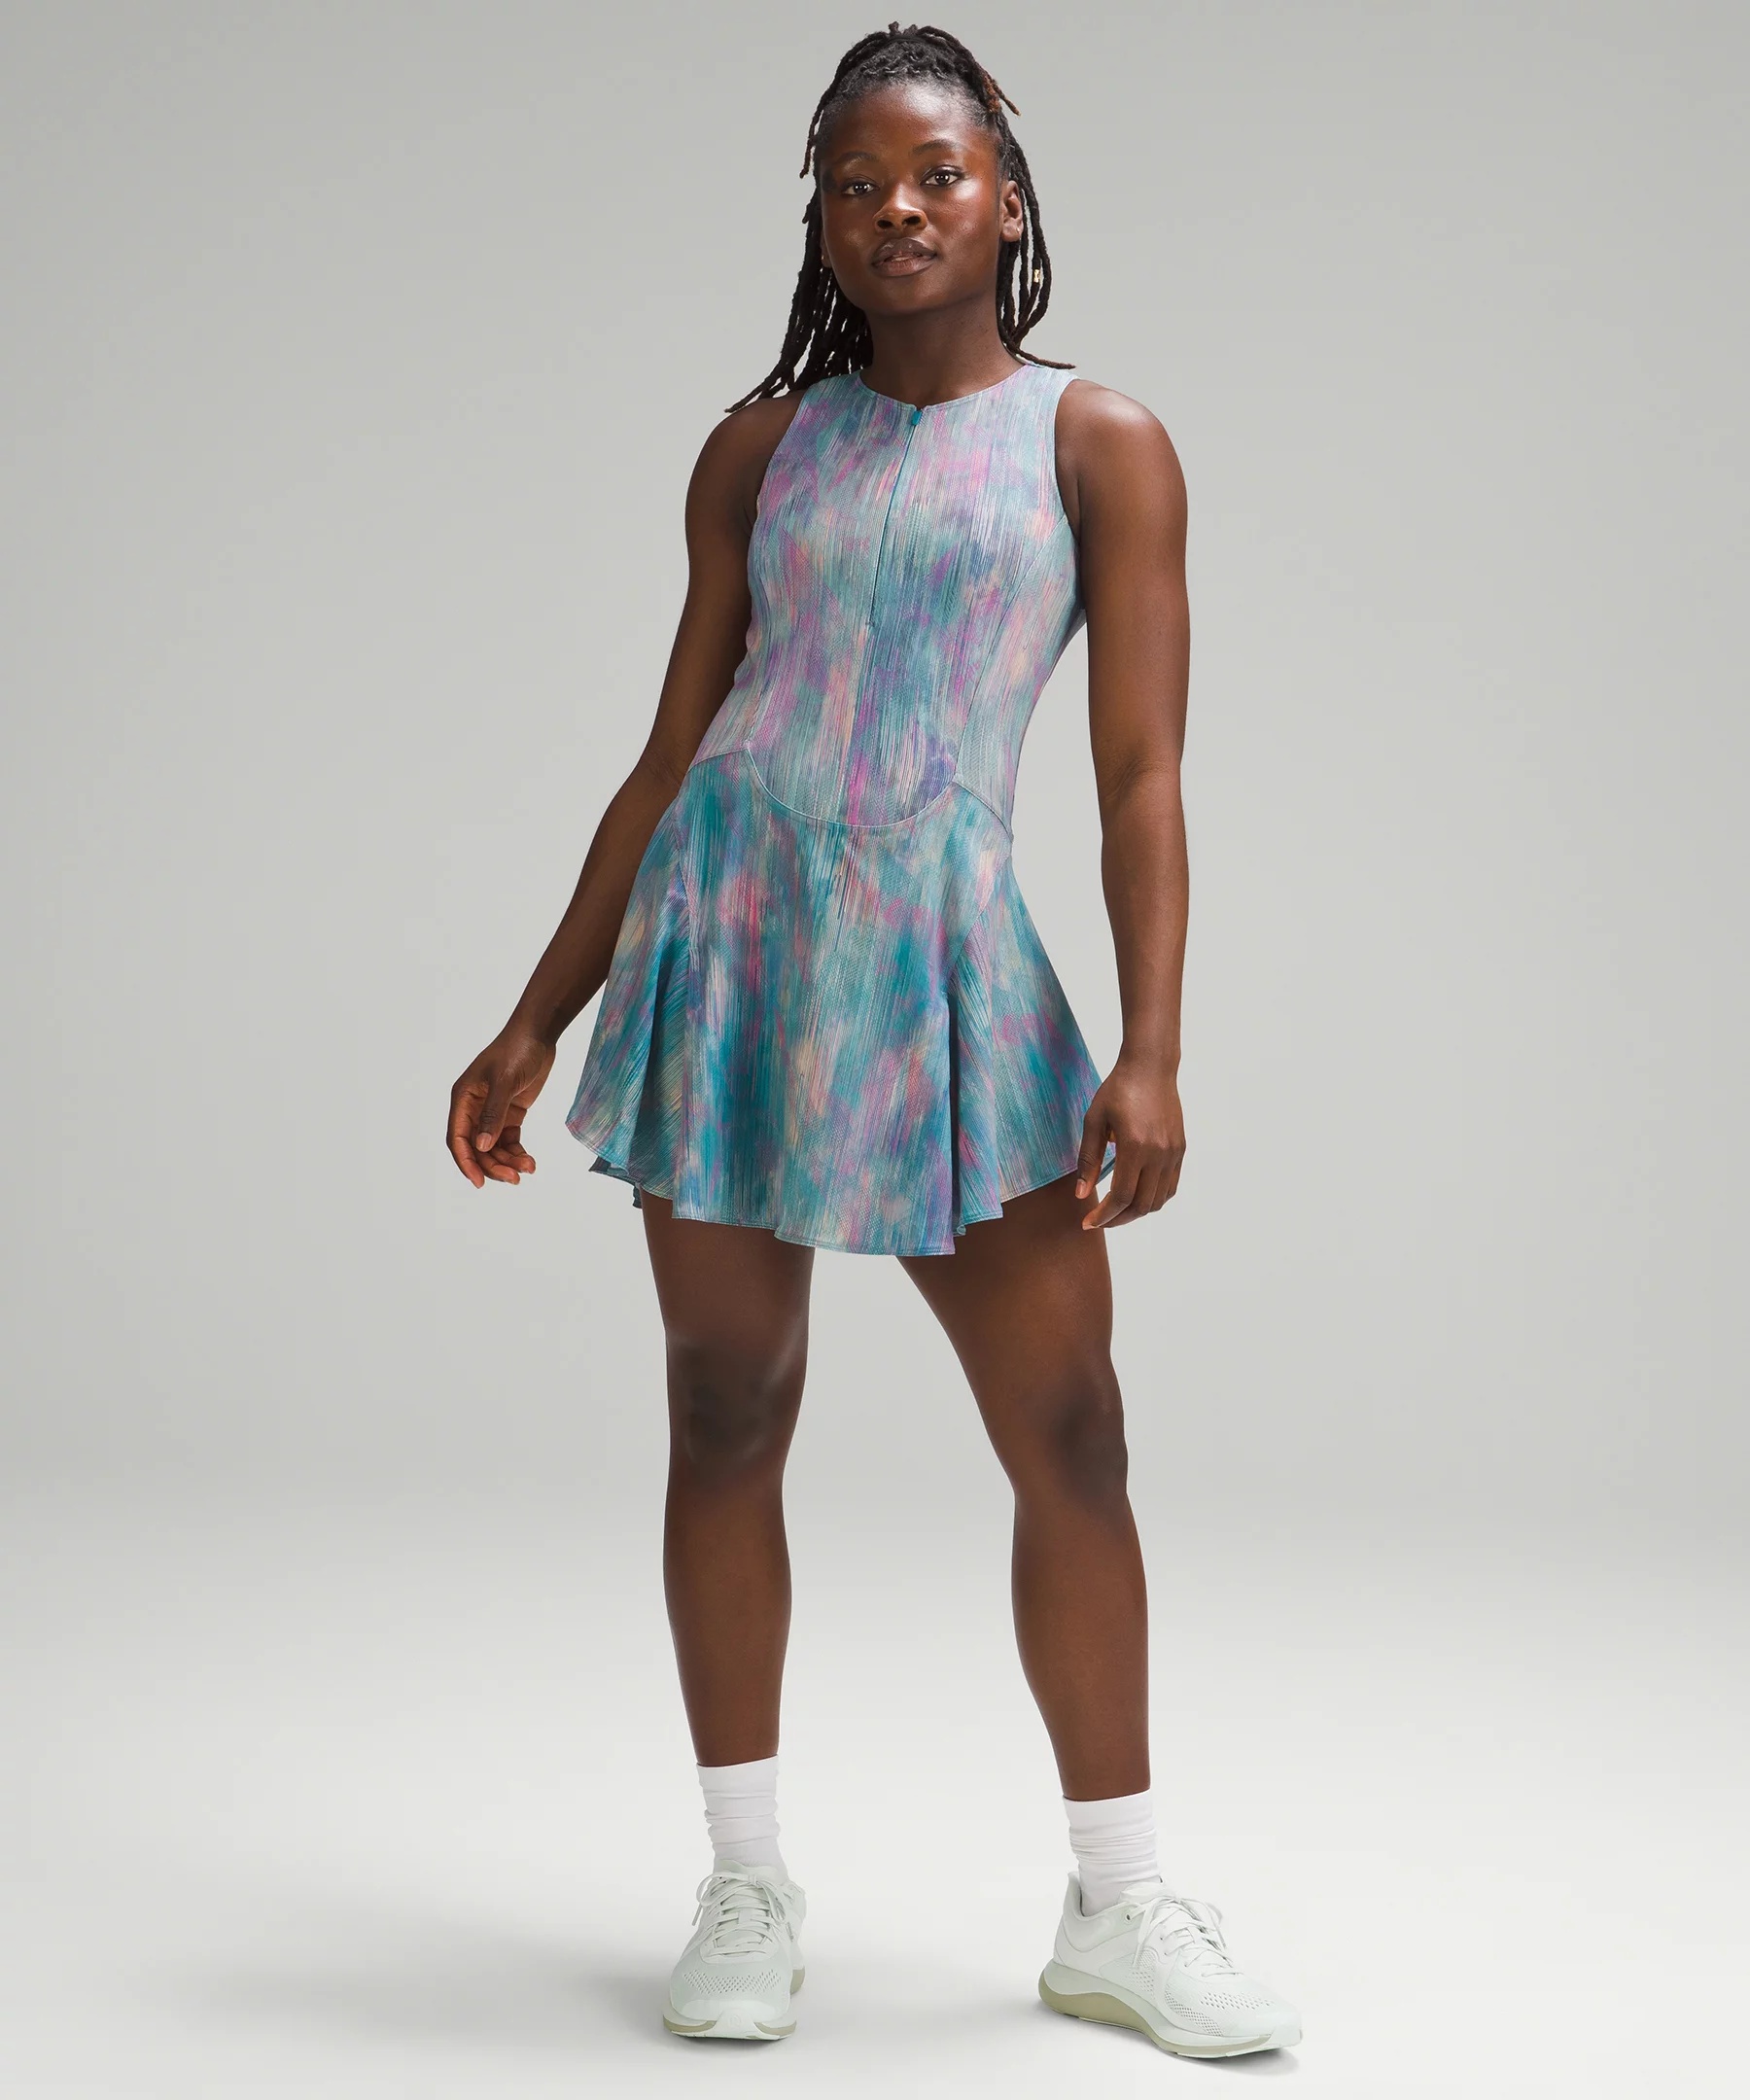 Everlux Short-Lined Tennis Tank Top Dress 6" - 1